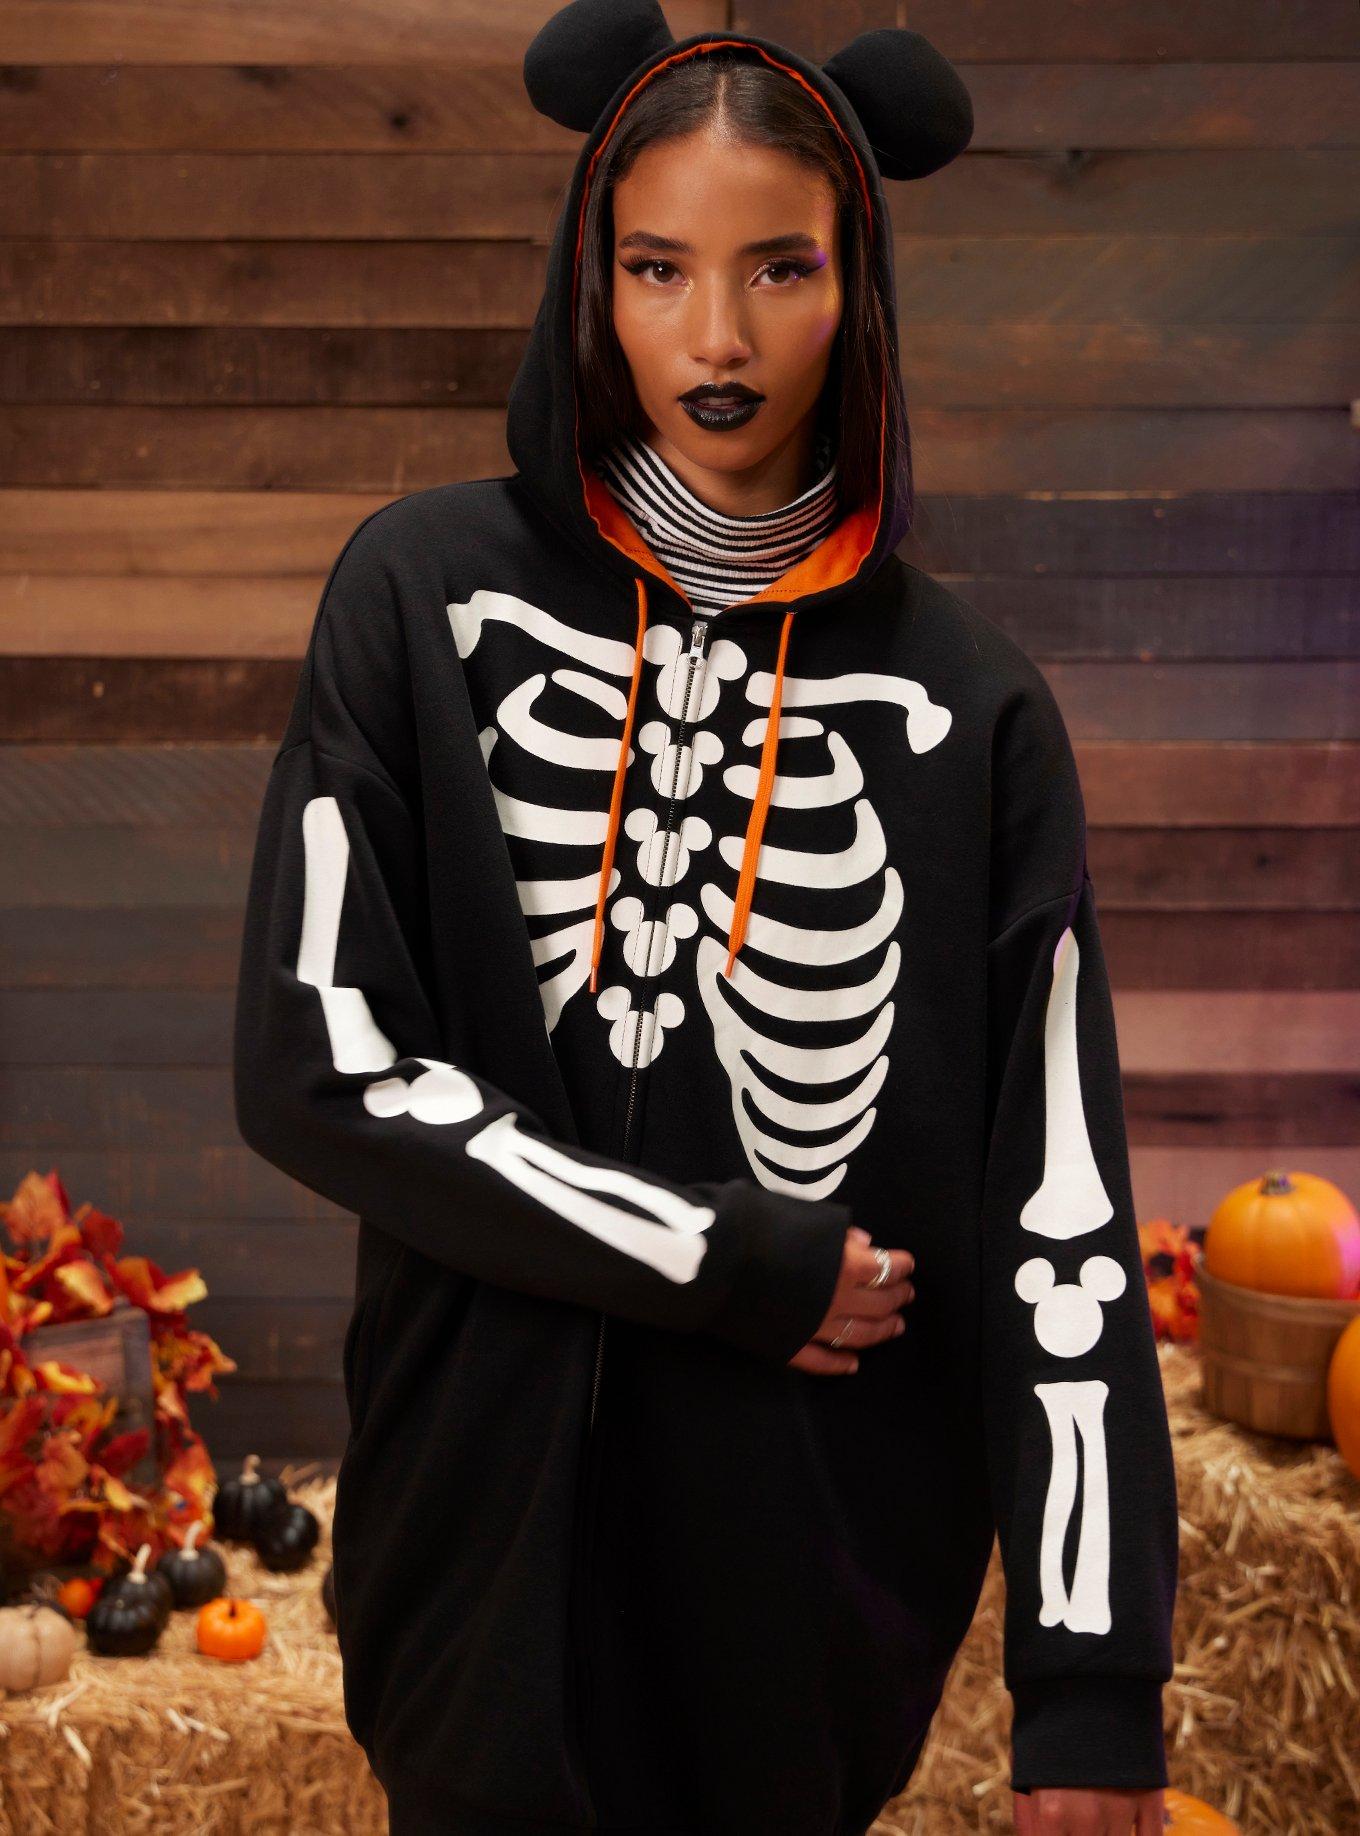 Bare Bone Babe Skeleton Costume for Women